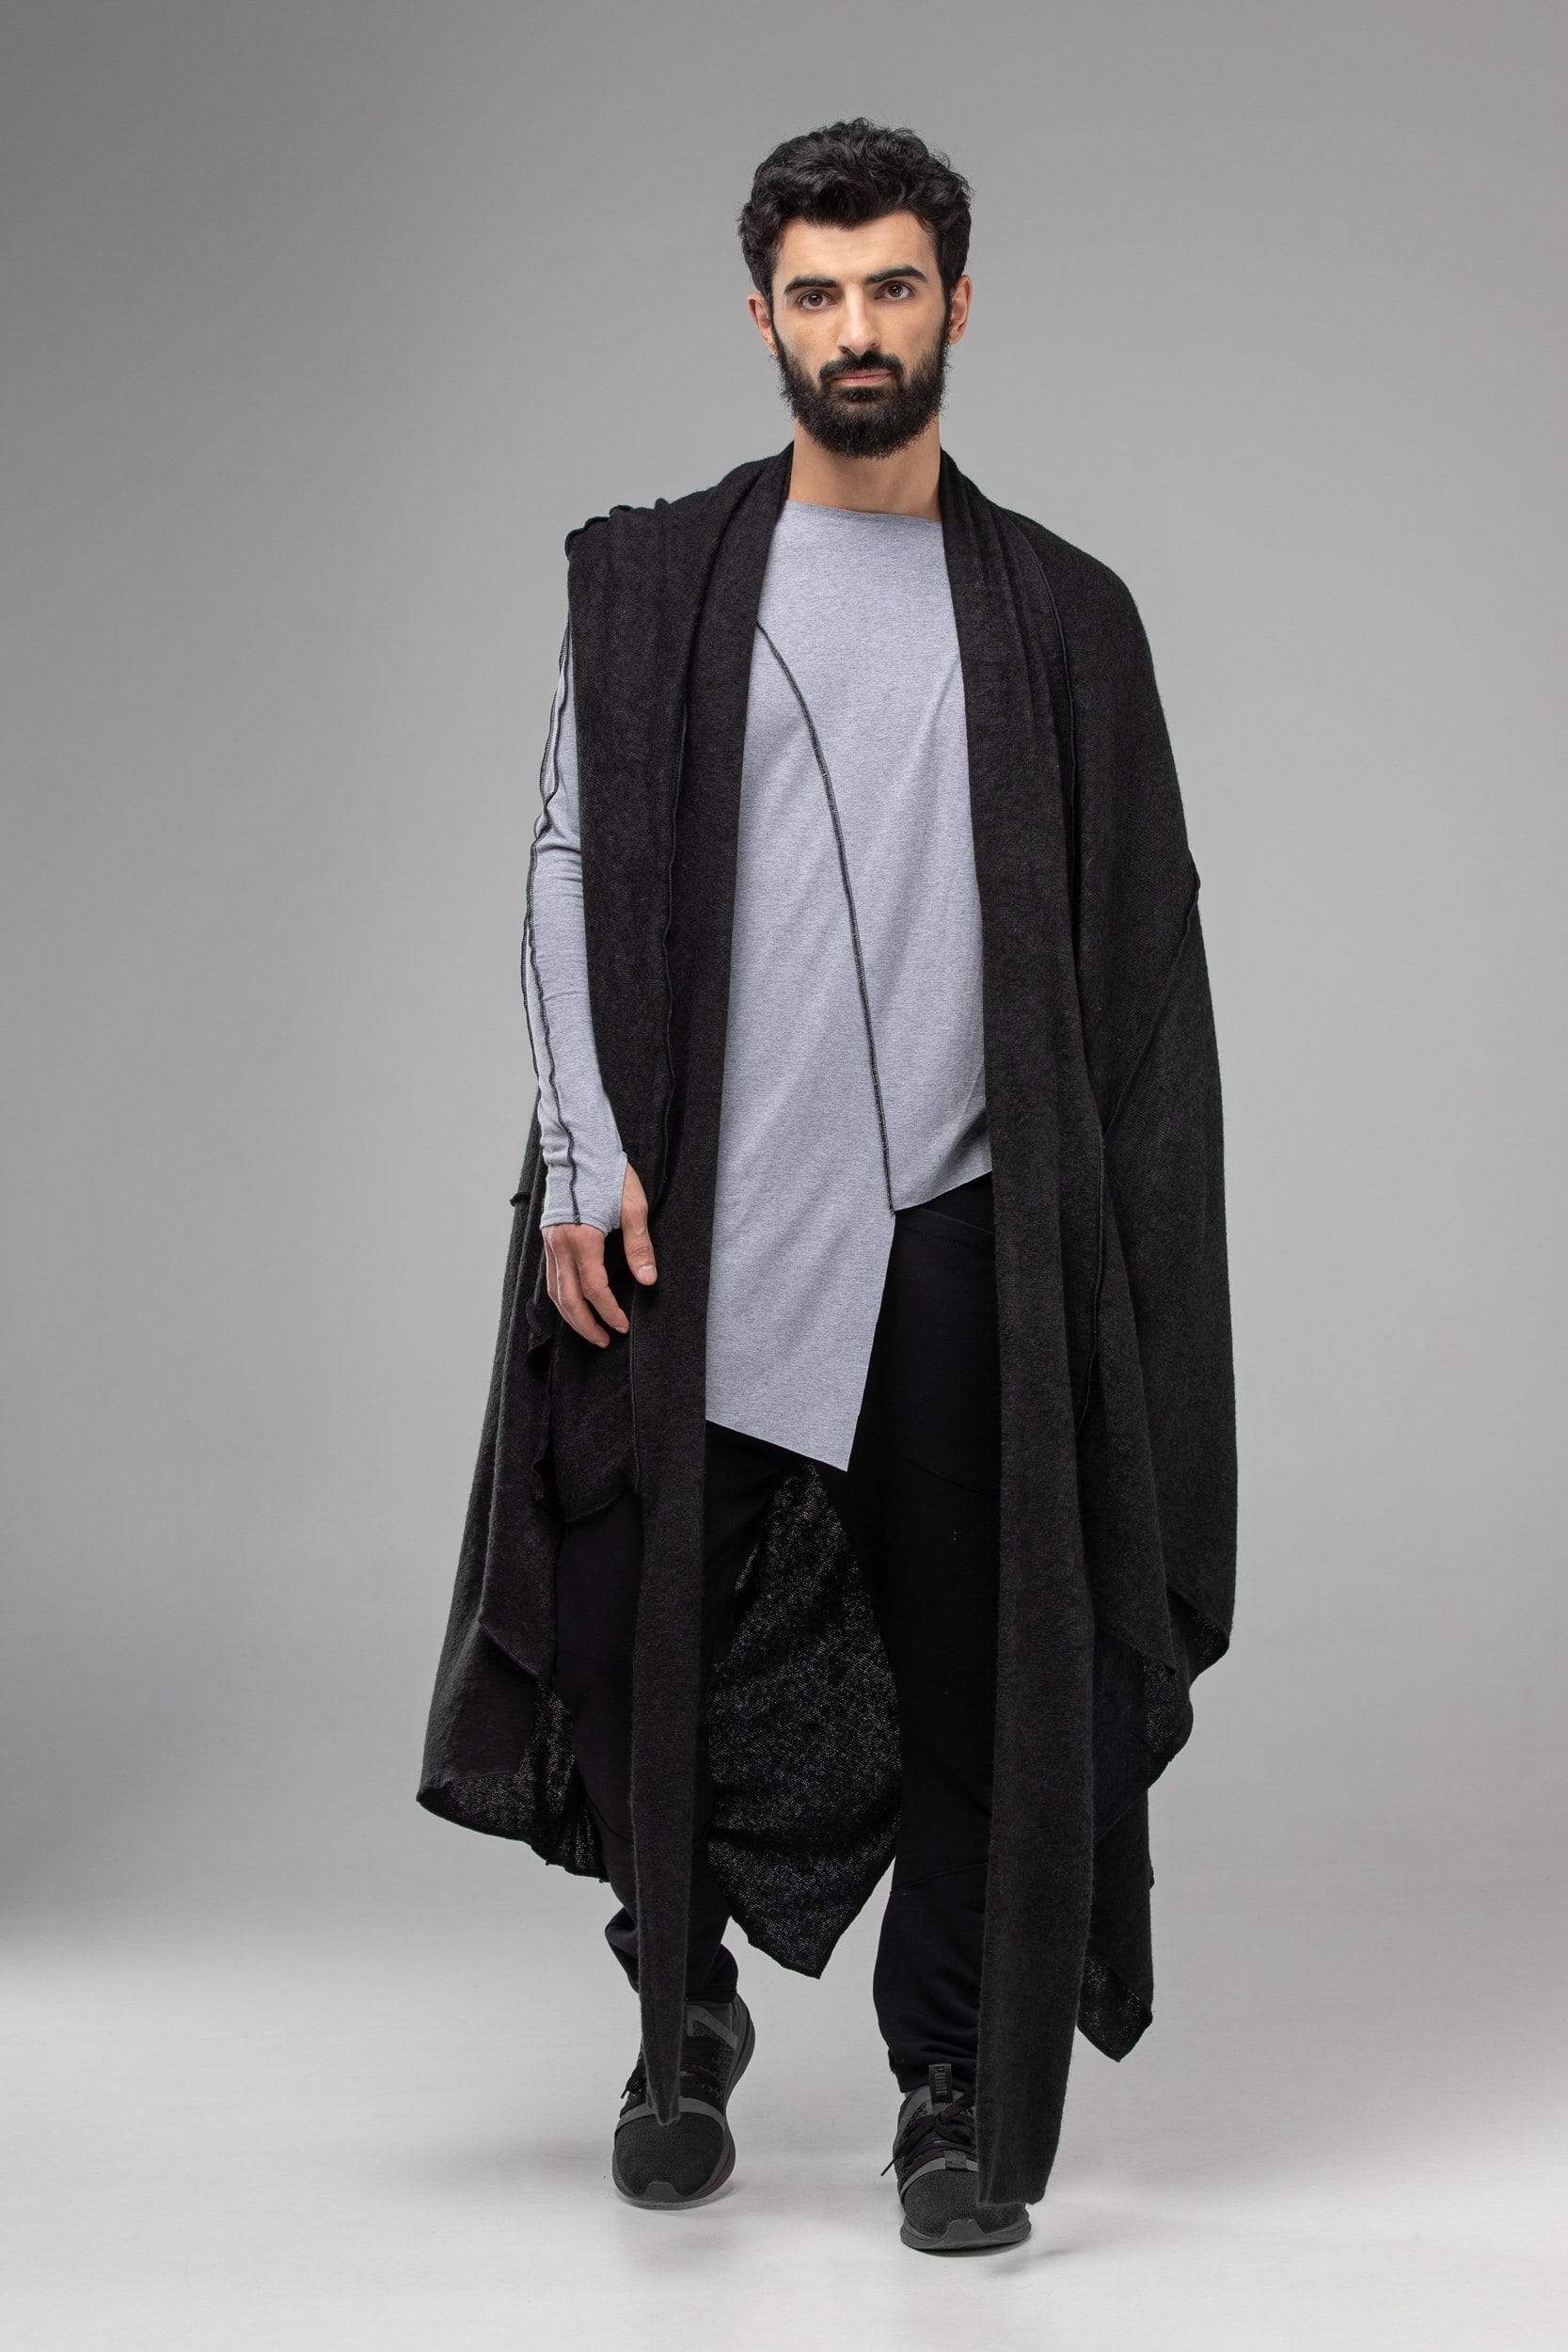 MDNT45 Coats & Jackets for Man One size / Black Black sleeveless coat